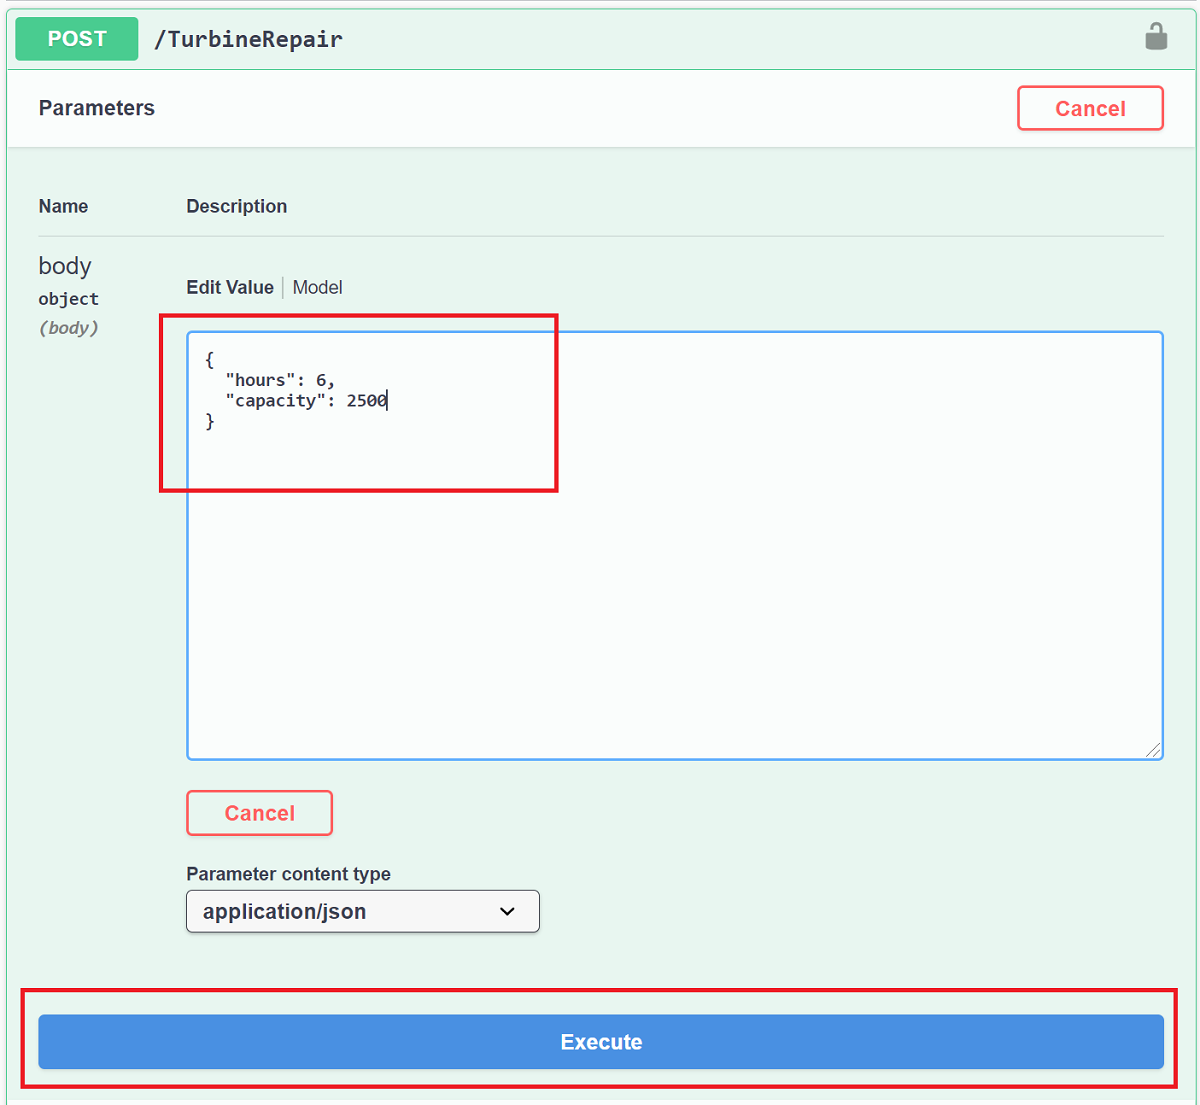 Swagger-användargränssnitt för testning av TurbineRepair-API:et